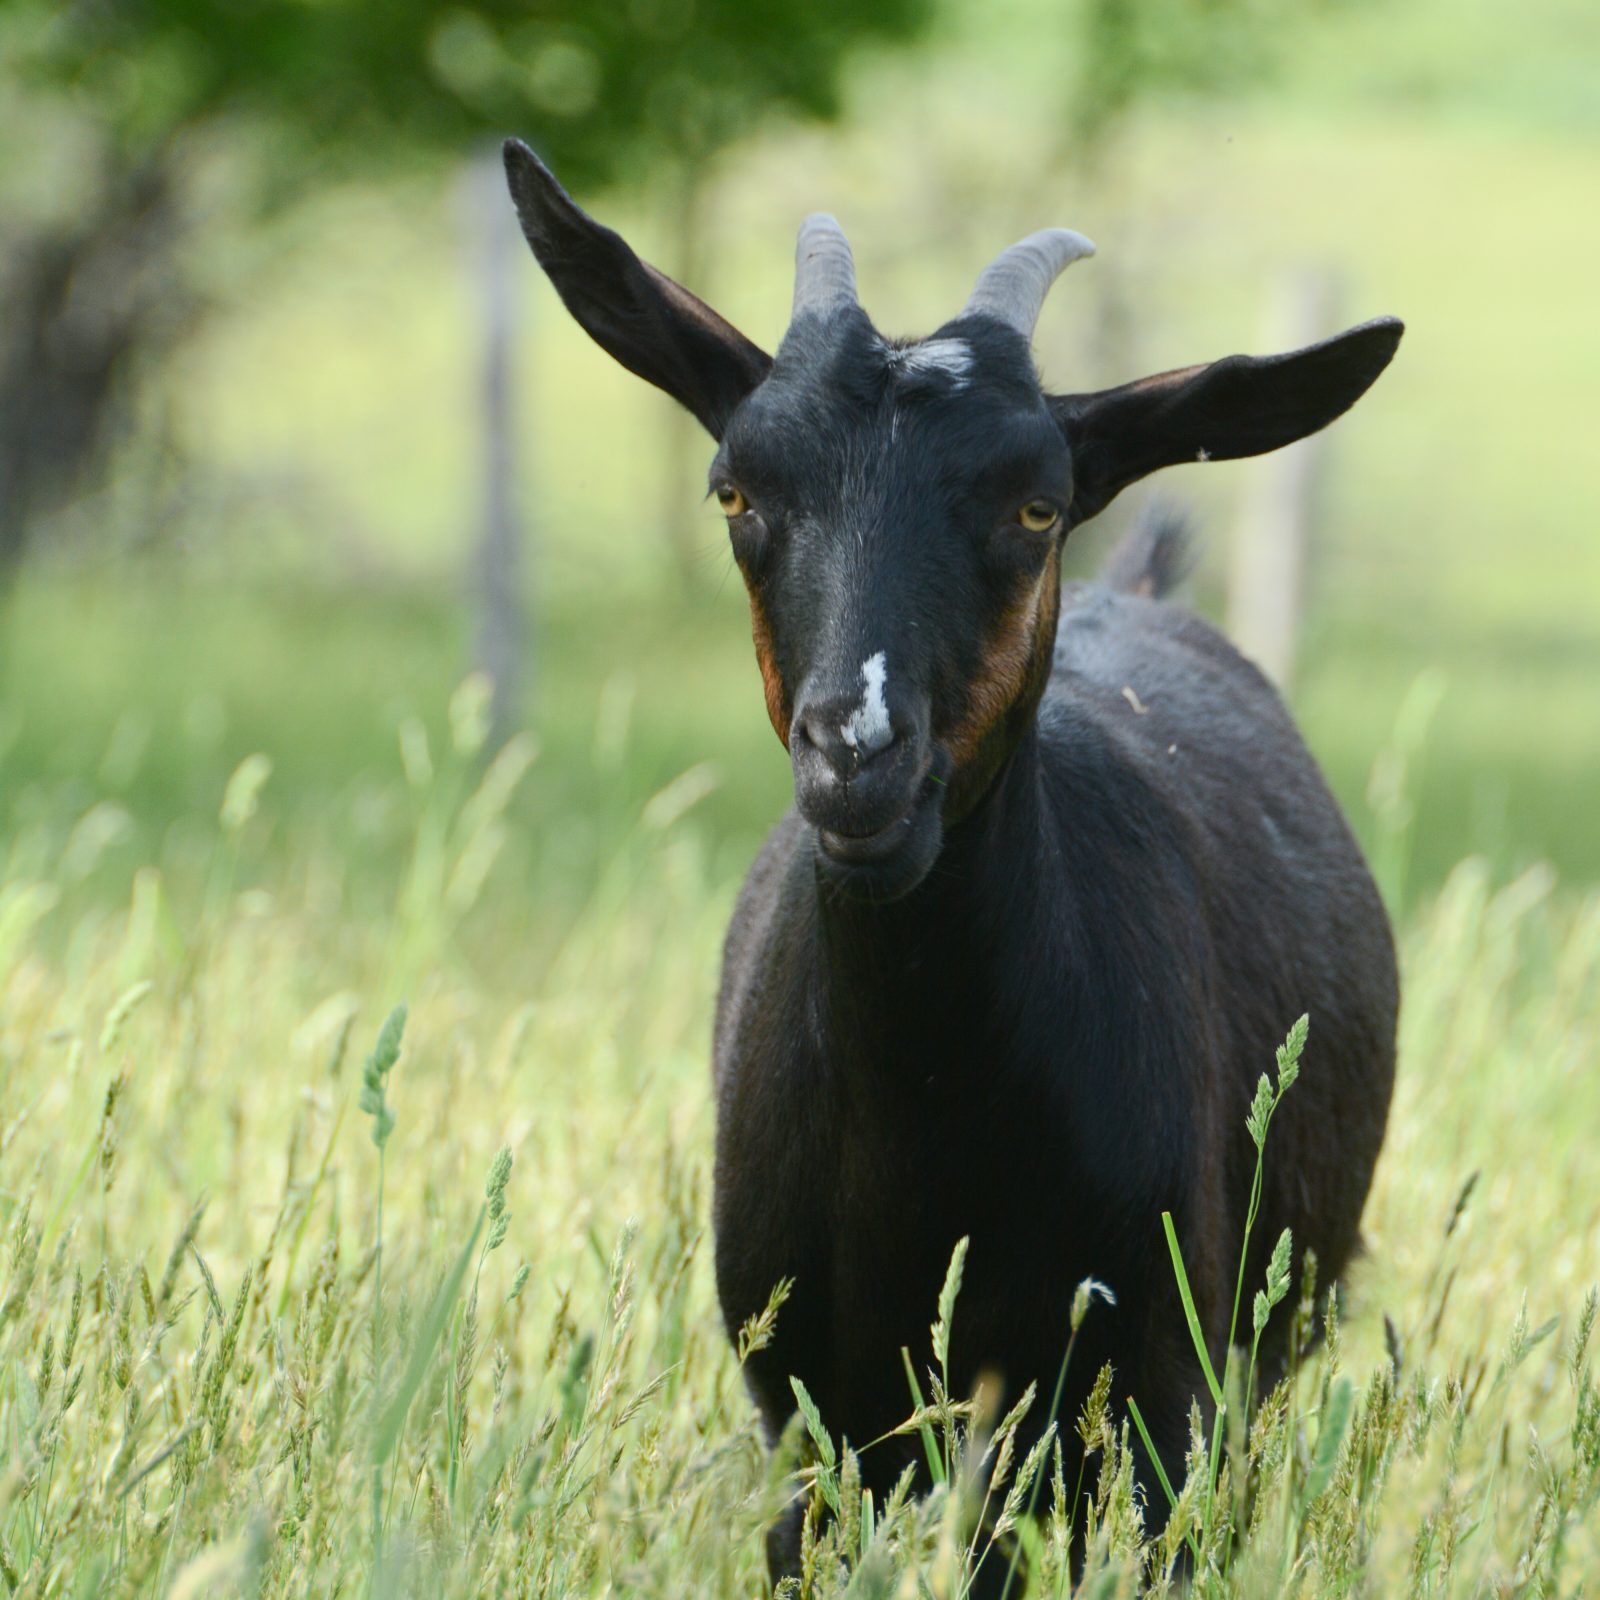 Jennifer goat at Farm Sanctuary